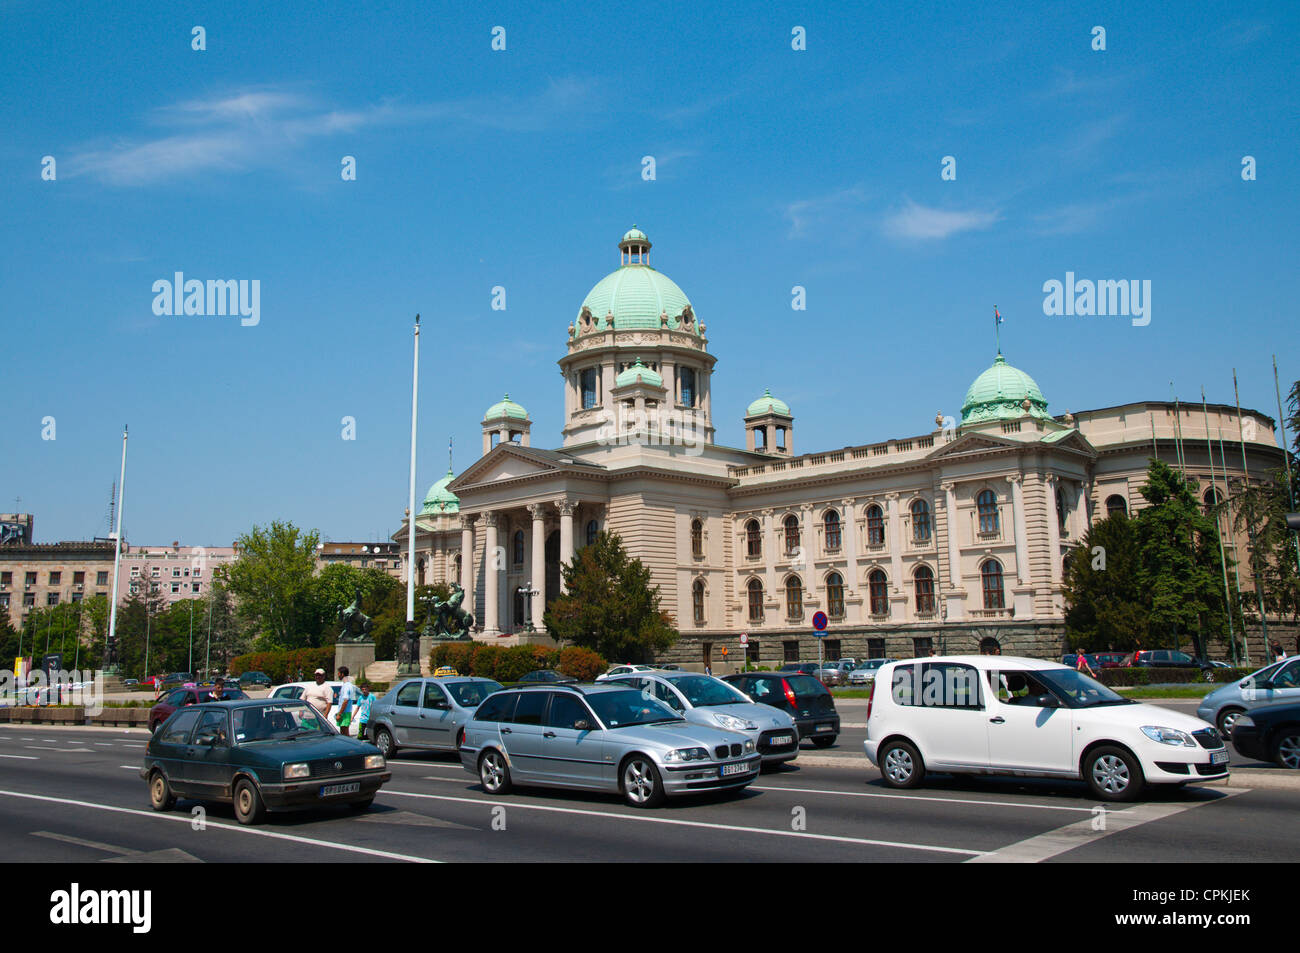 Autos auf Bulevar Kralja Aleksandra Straße vor der serbischen Nationalversammlung Parlamentsgebäude zentrale Belgrad Serbien Stockfoto